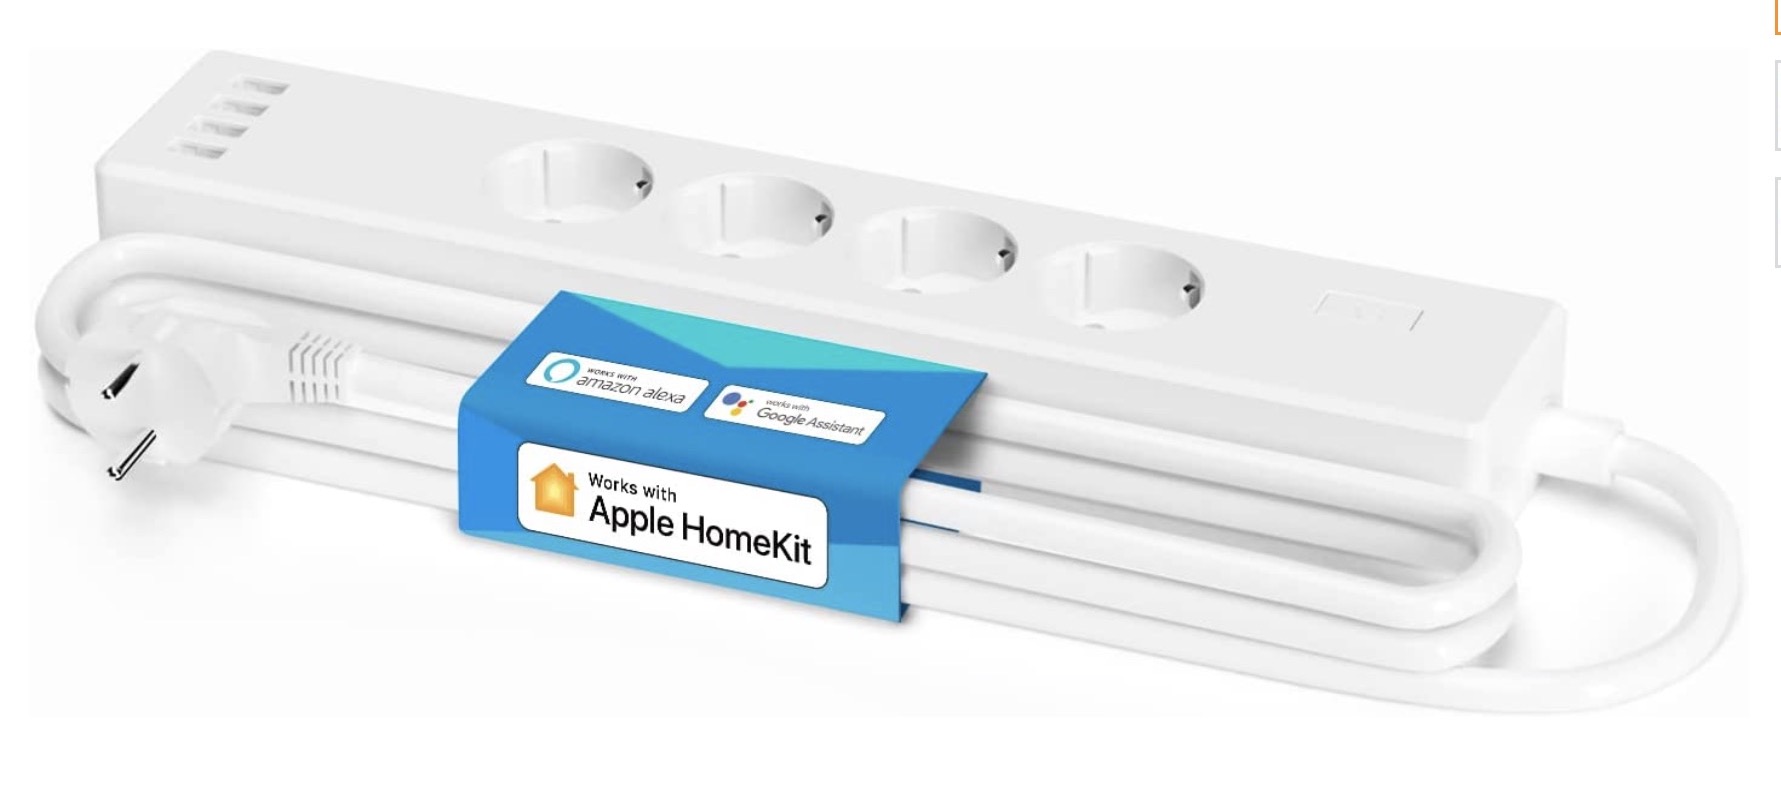 I migliori regali per chi ha o vuole creare un sistema domotico con Apple Homekit